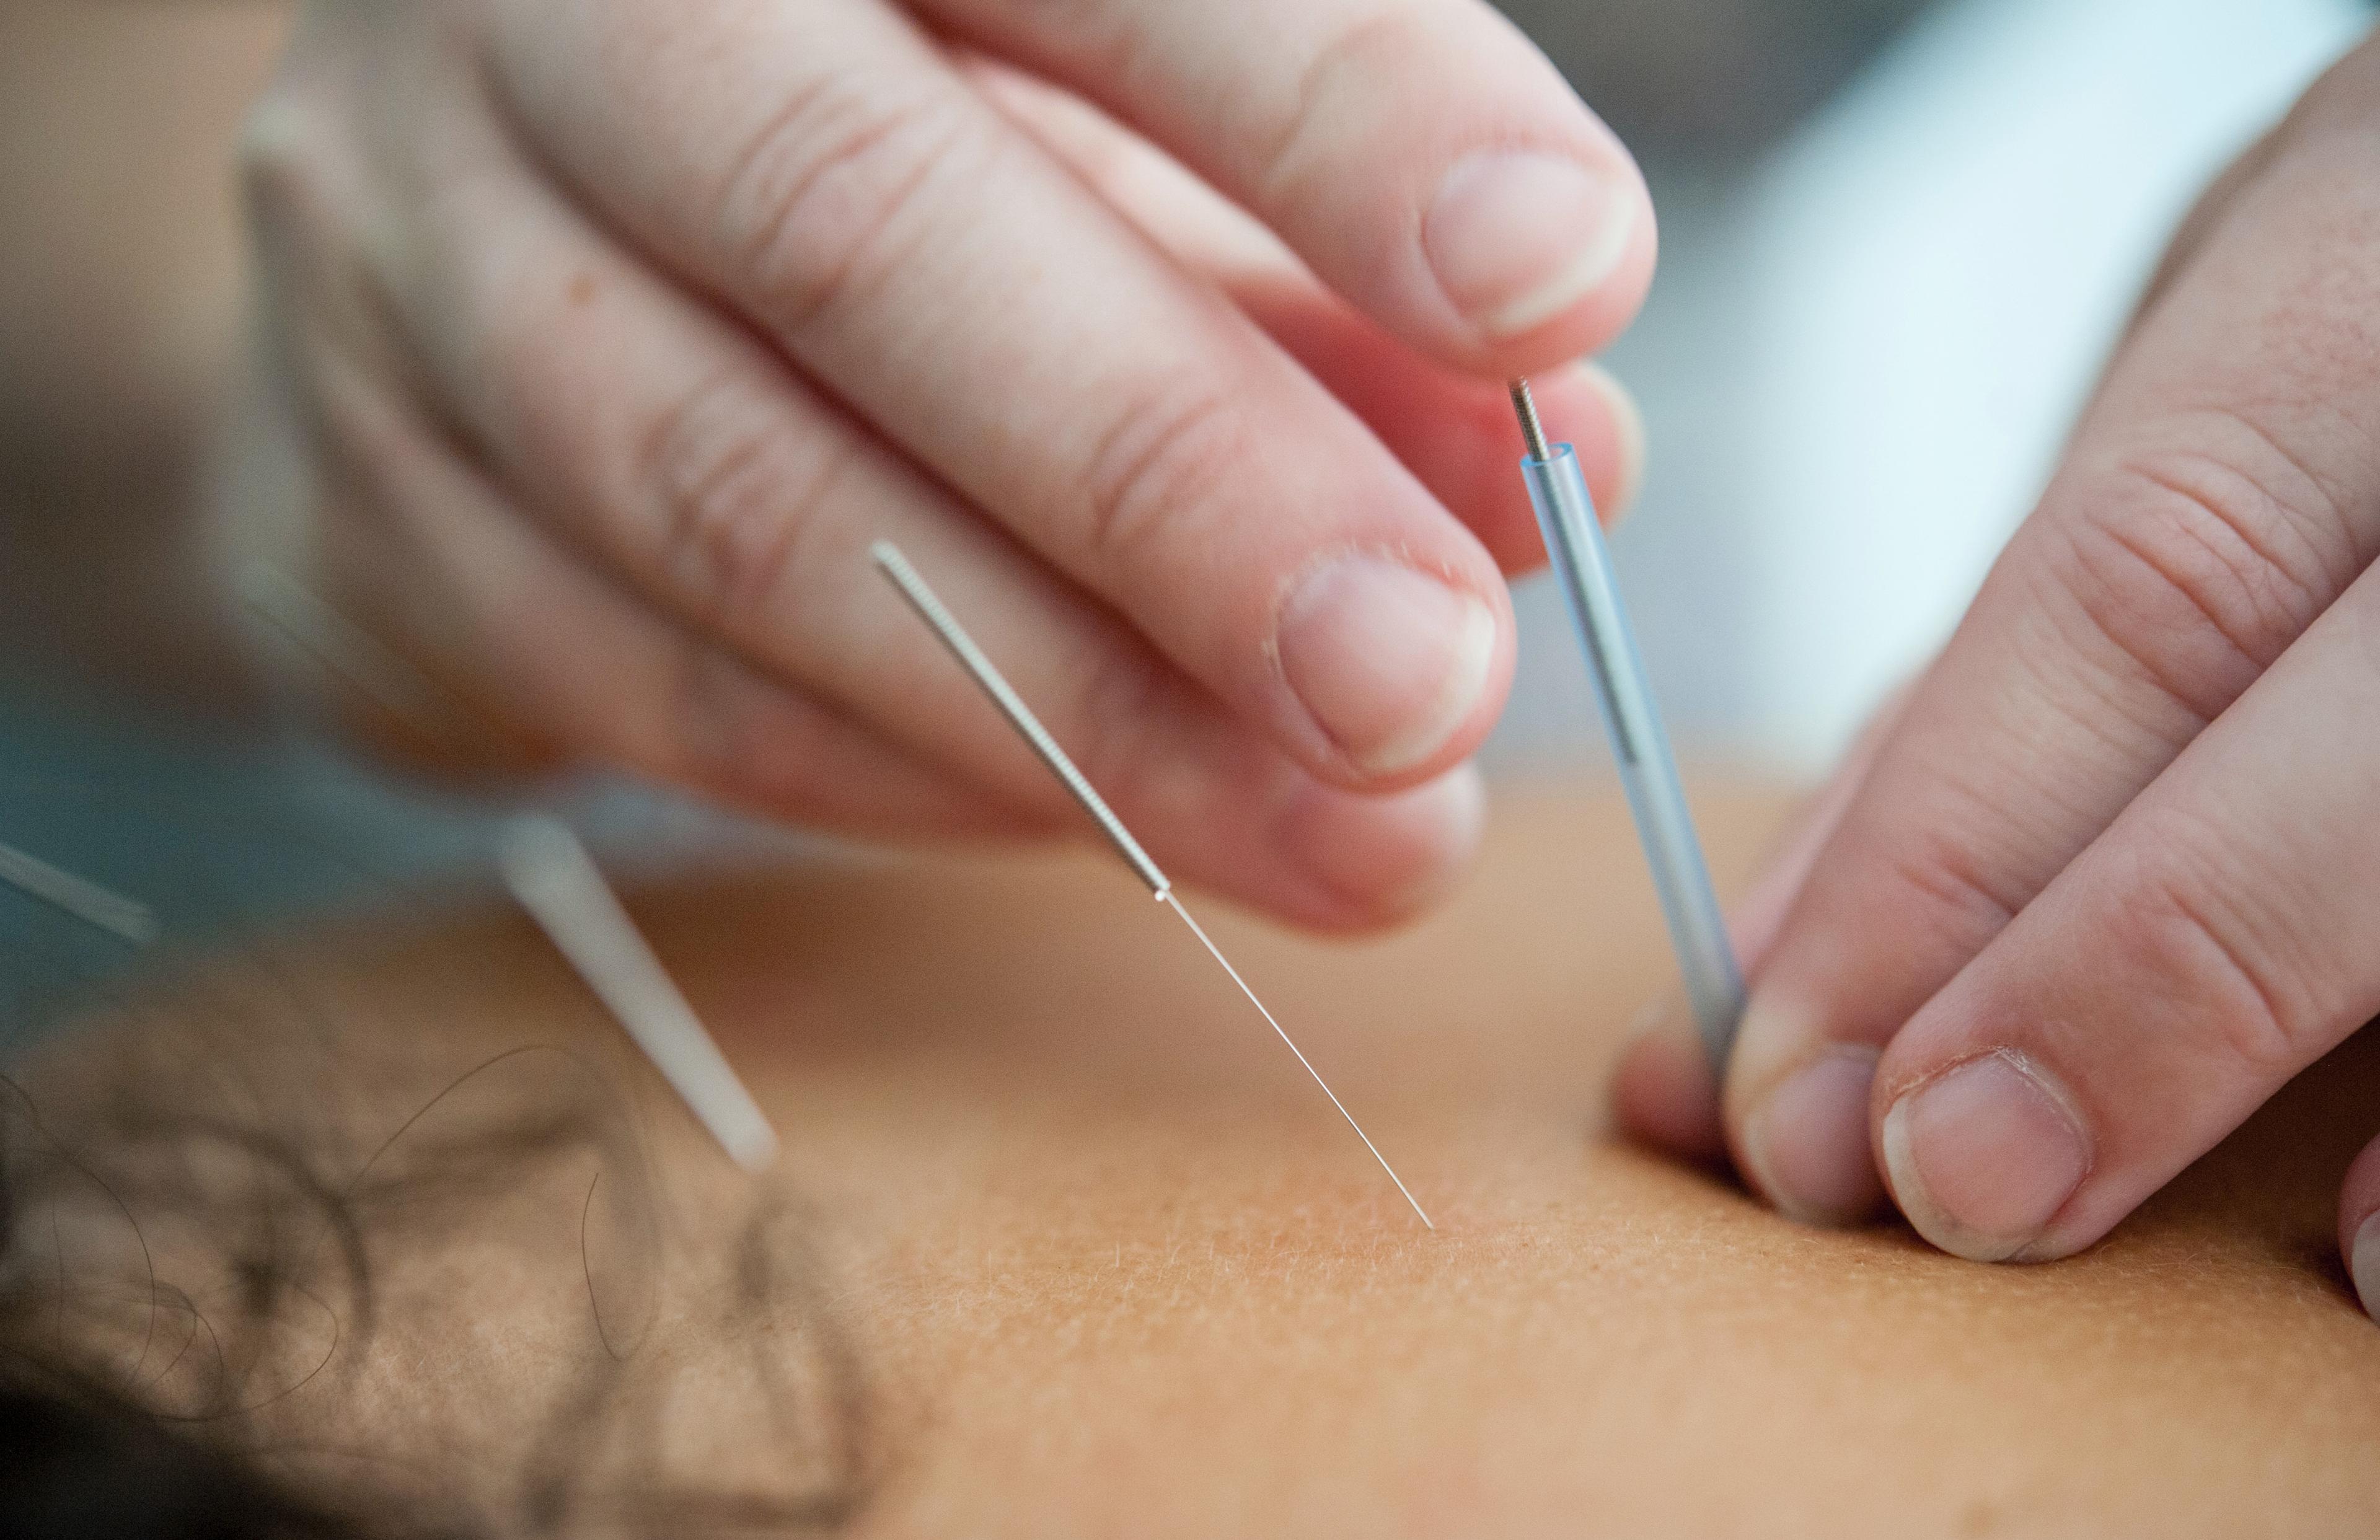 Akupunktura - co to i jak ją stosować? Akupunktura – na czym polega zabieg i ta metoda leczenia dolegliwości. Nakłuwanie igłami. Kiedy stosować akupunkturę? 